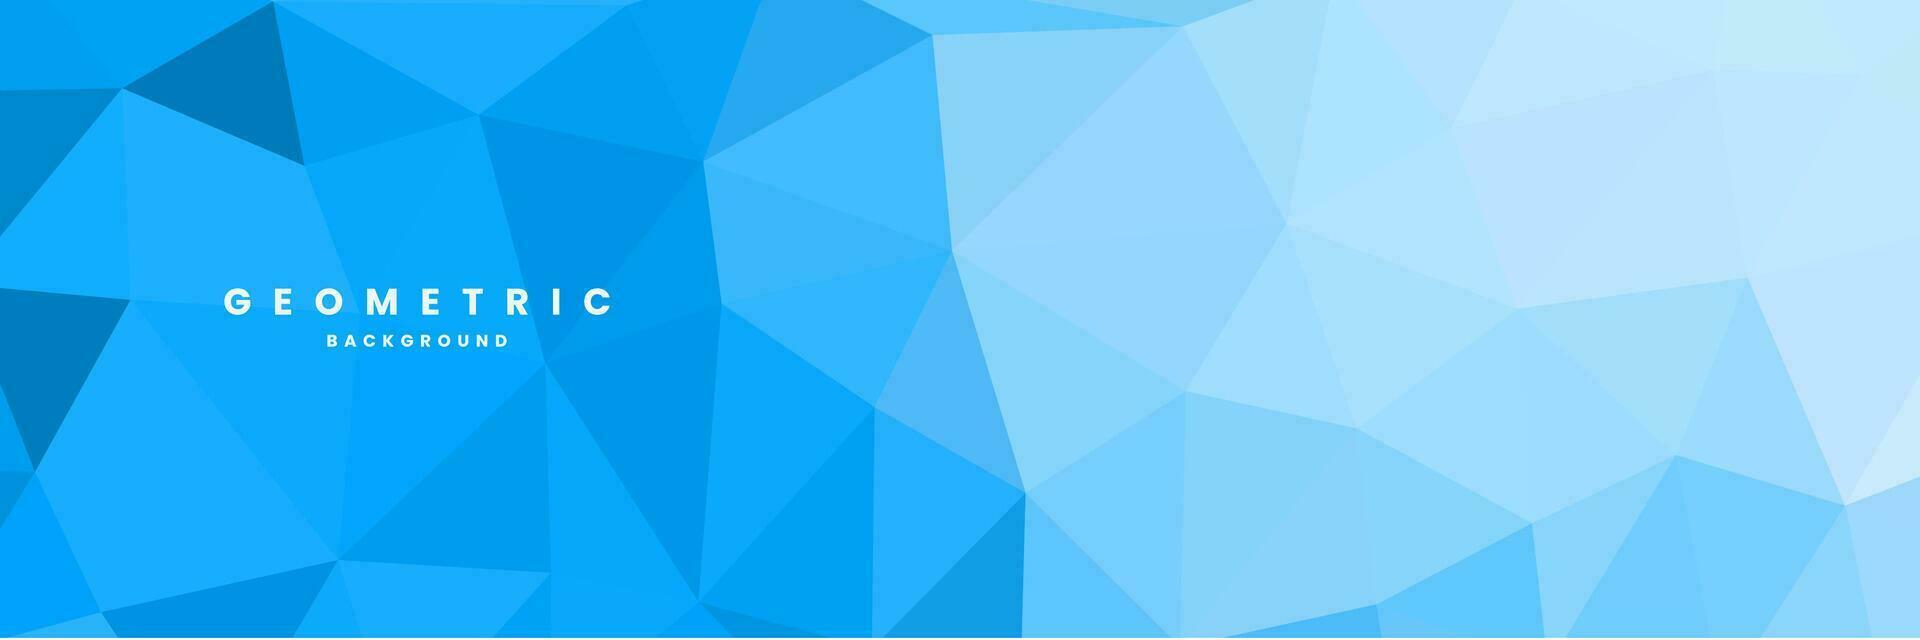 fondo azul abstracto con triángulos vector